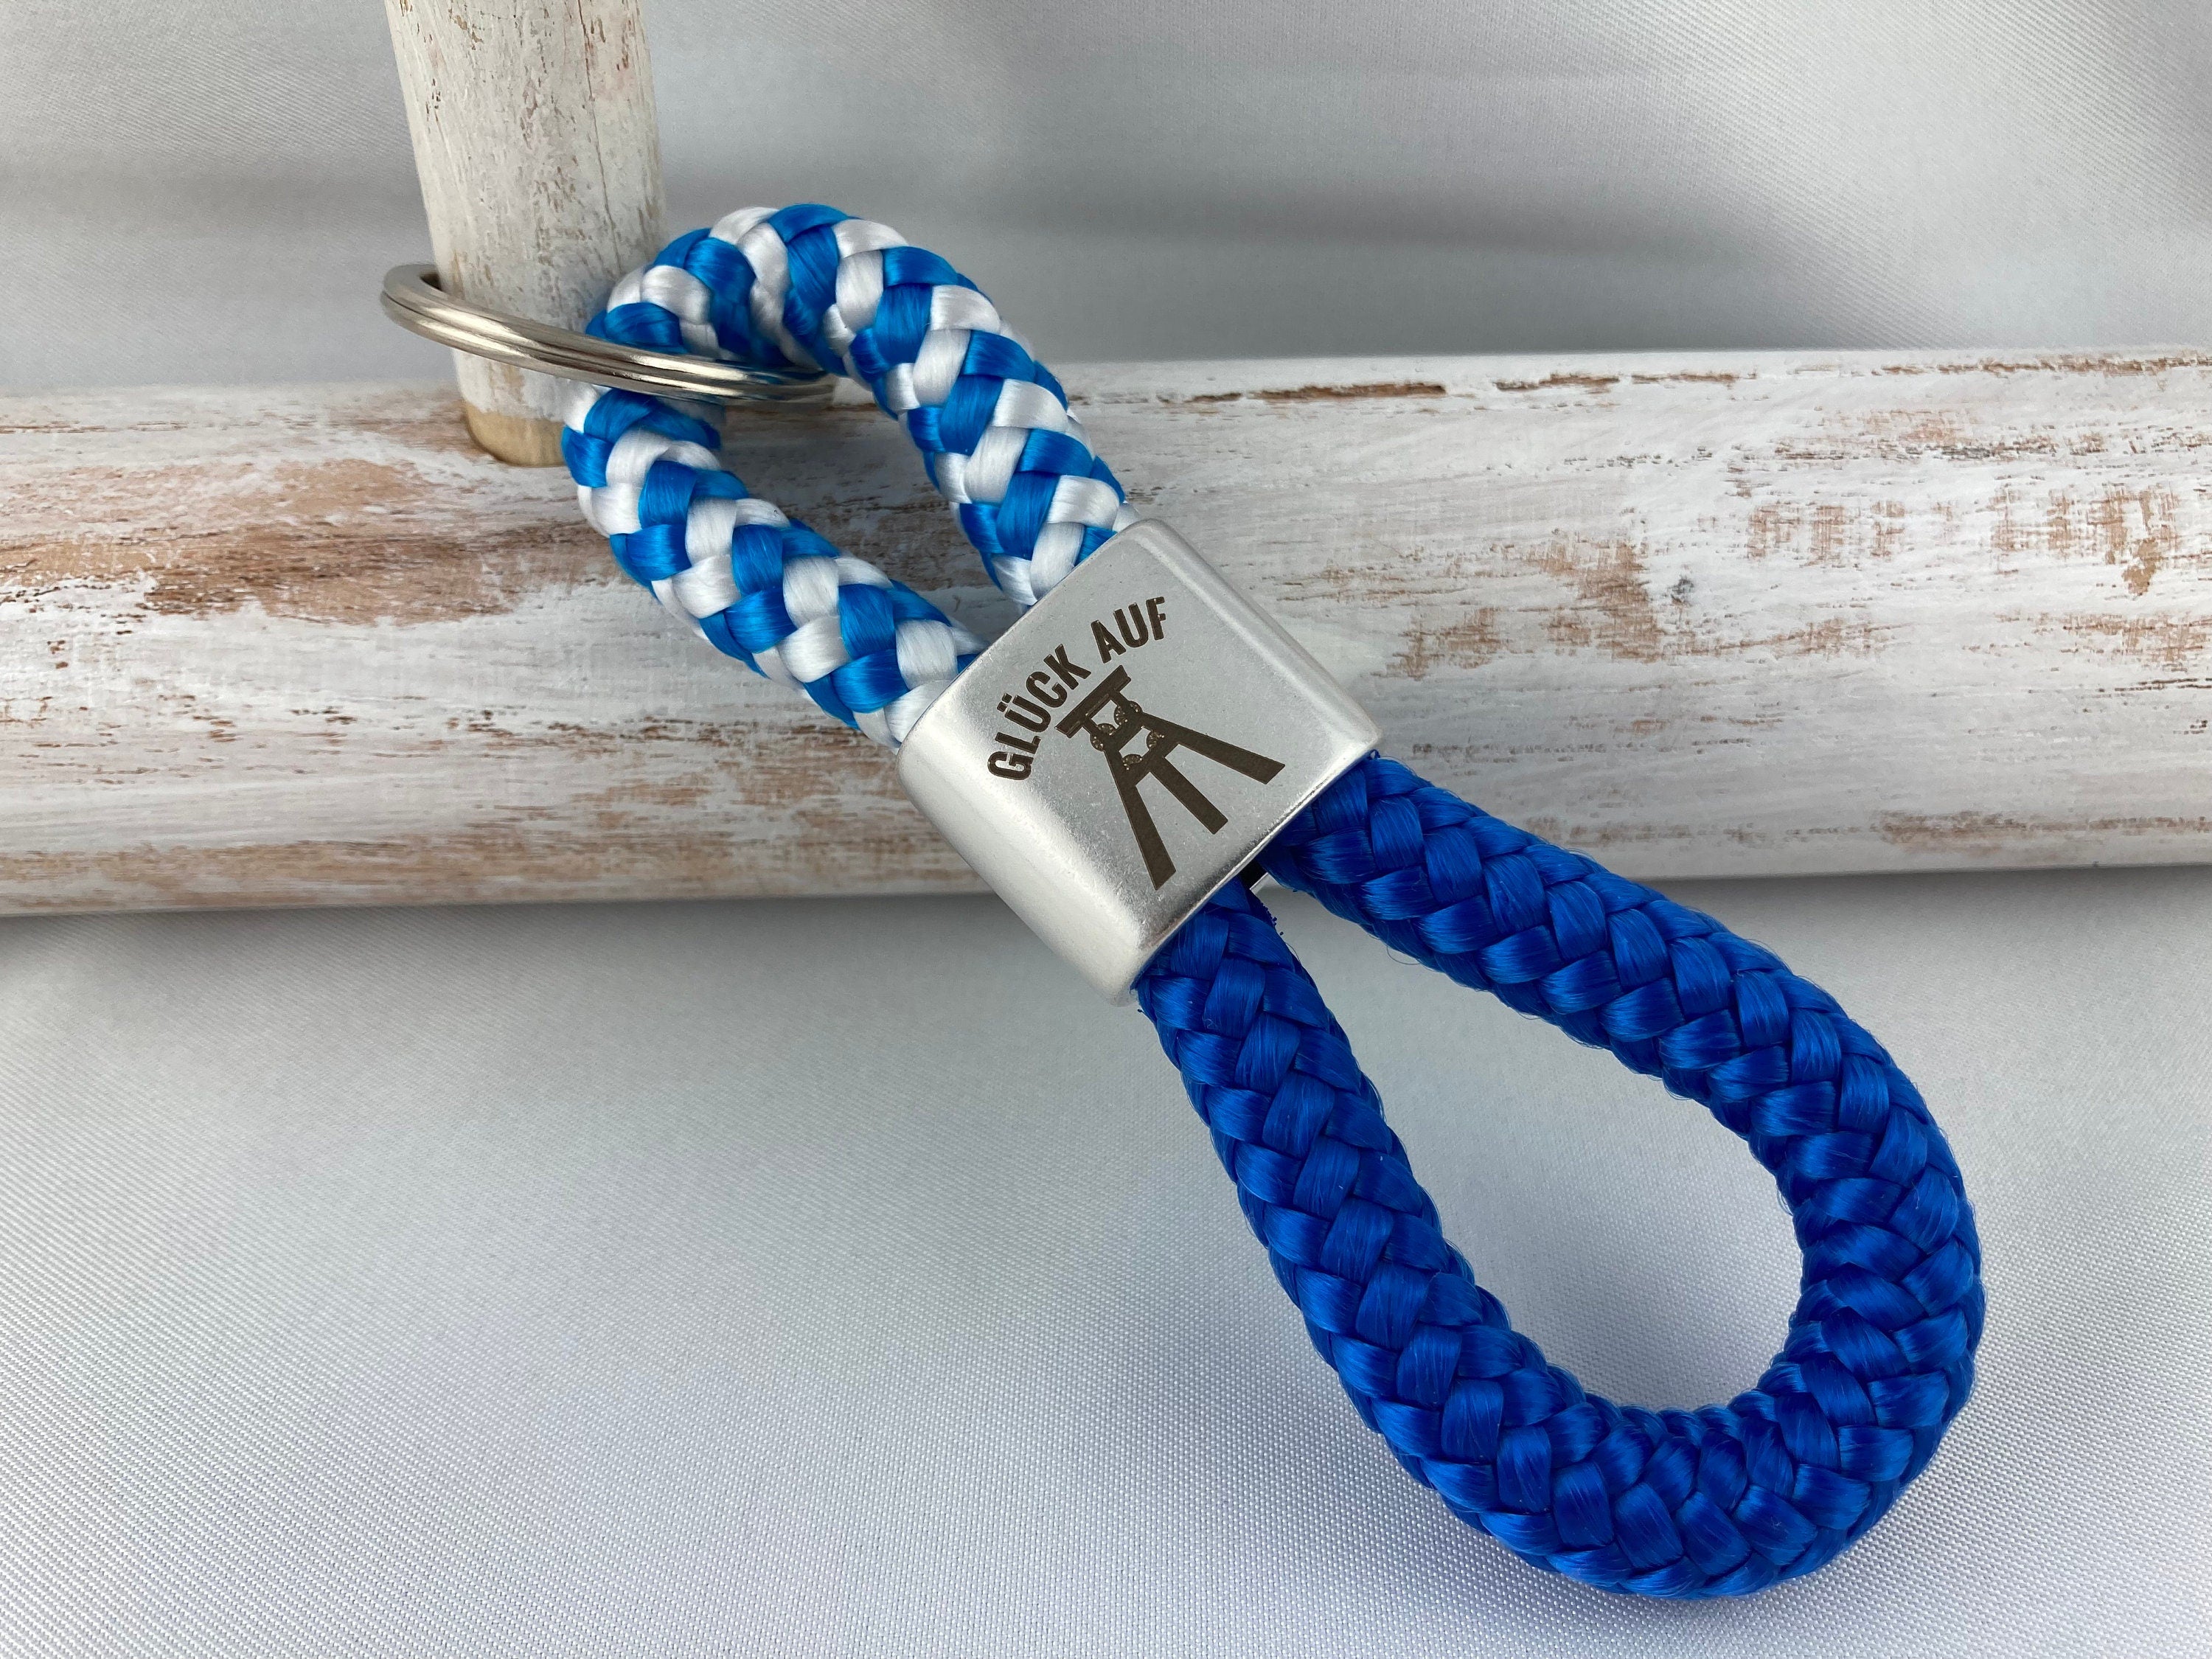 Schlüsselanhänger aus Segelseil mit versilbertem Zwischenstück mit Gravur "Glück auf", blau-weiß/ blau